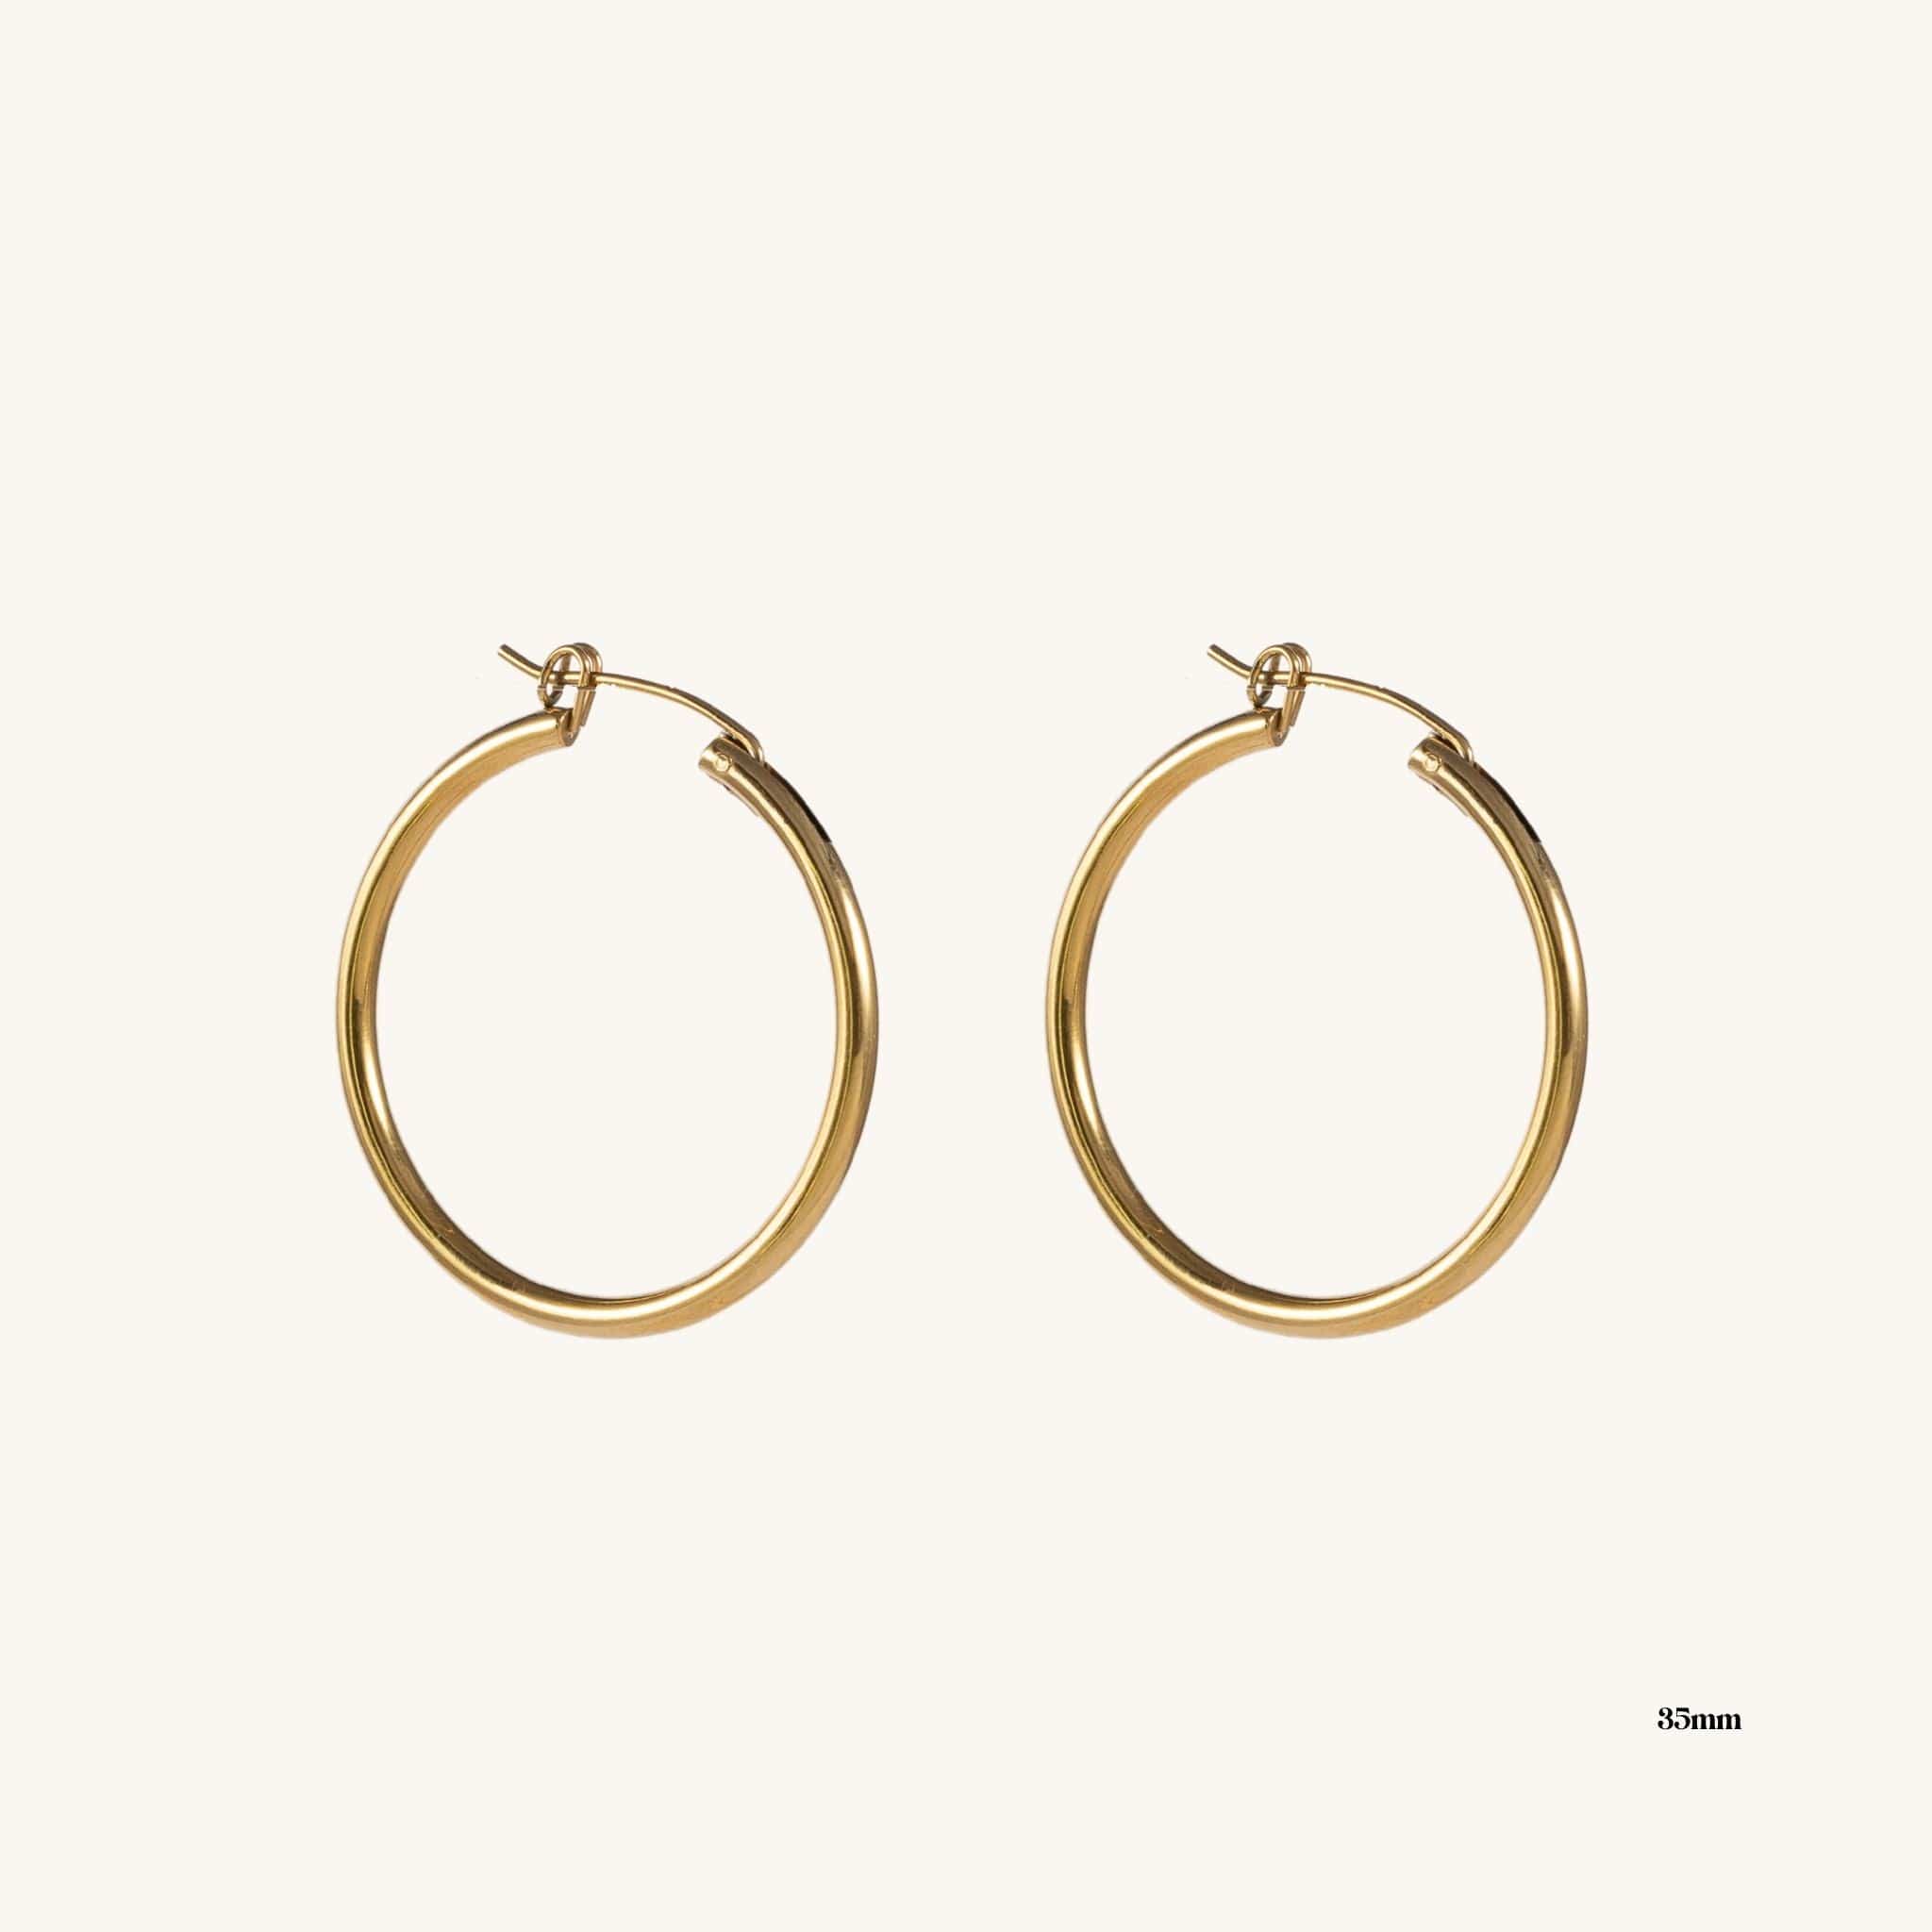 Joanna Gold Hoops by Koréil Jewelry